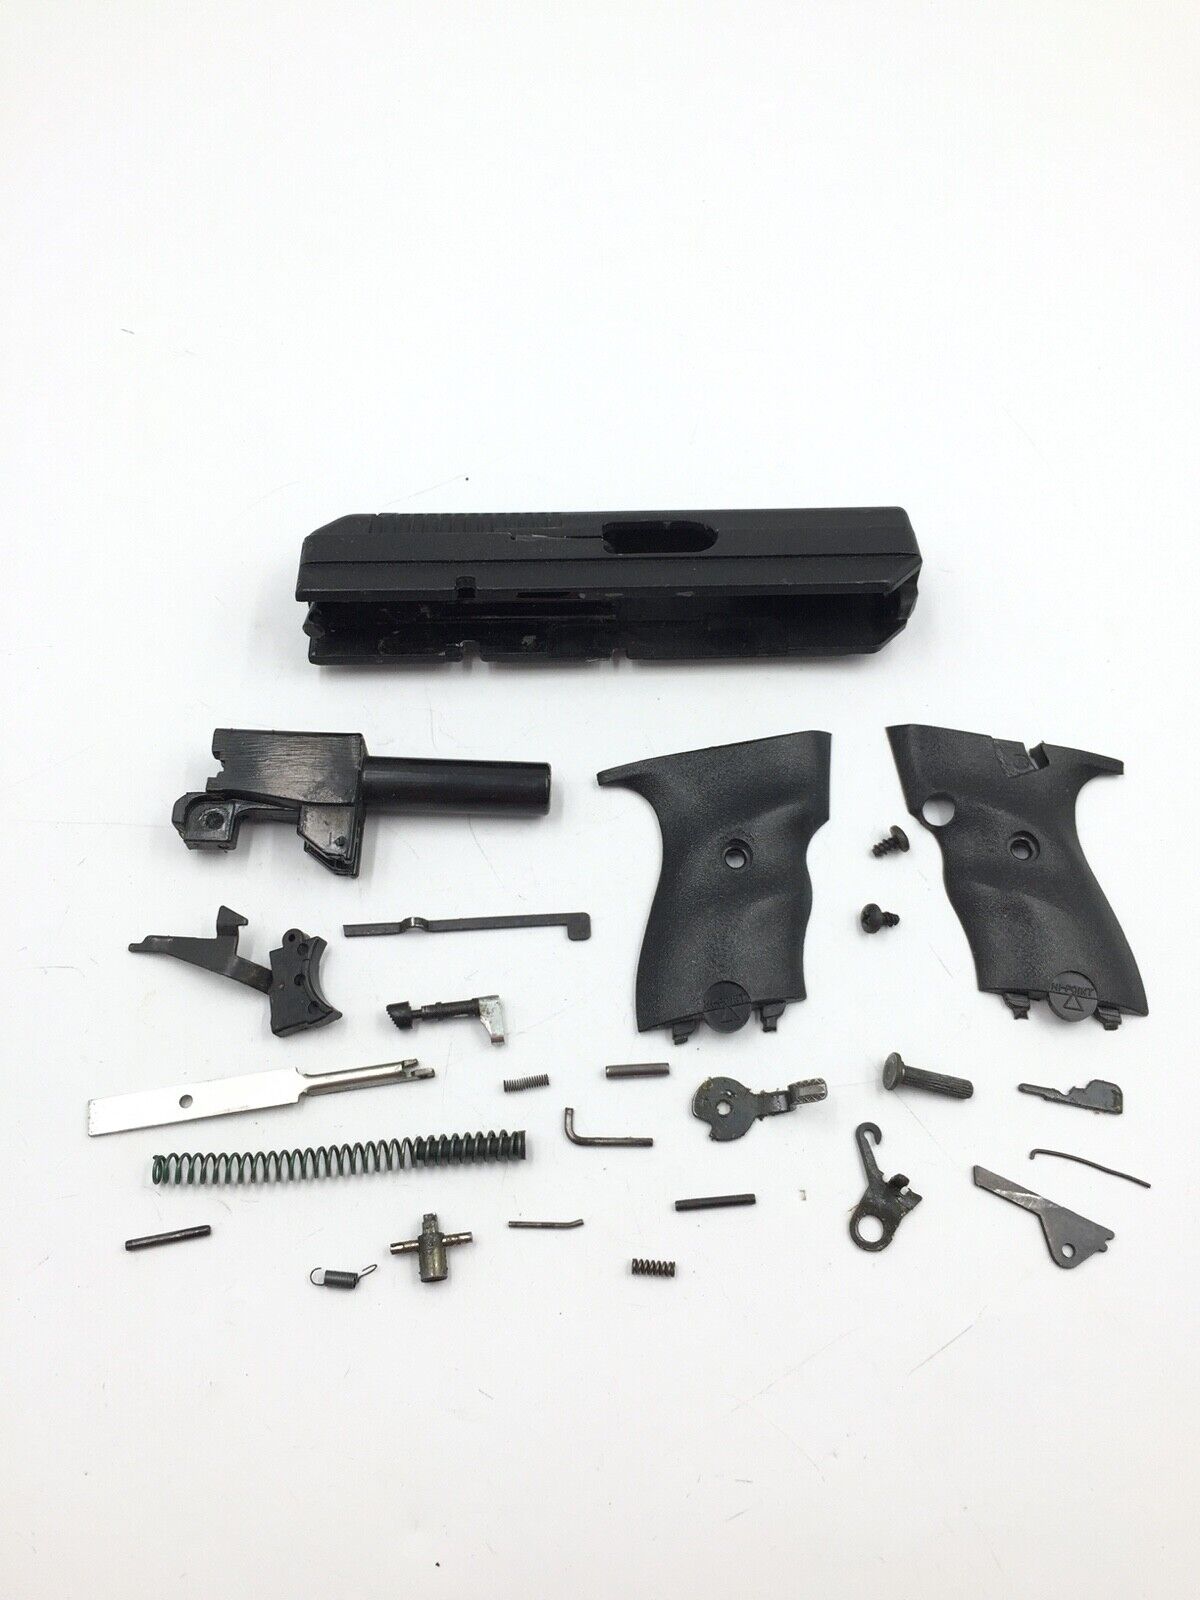 Hi-Point Model C9 9MM, pistol parts, slide, barrel, recoil spring, grips, 